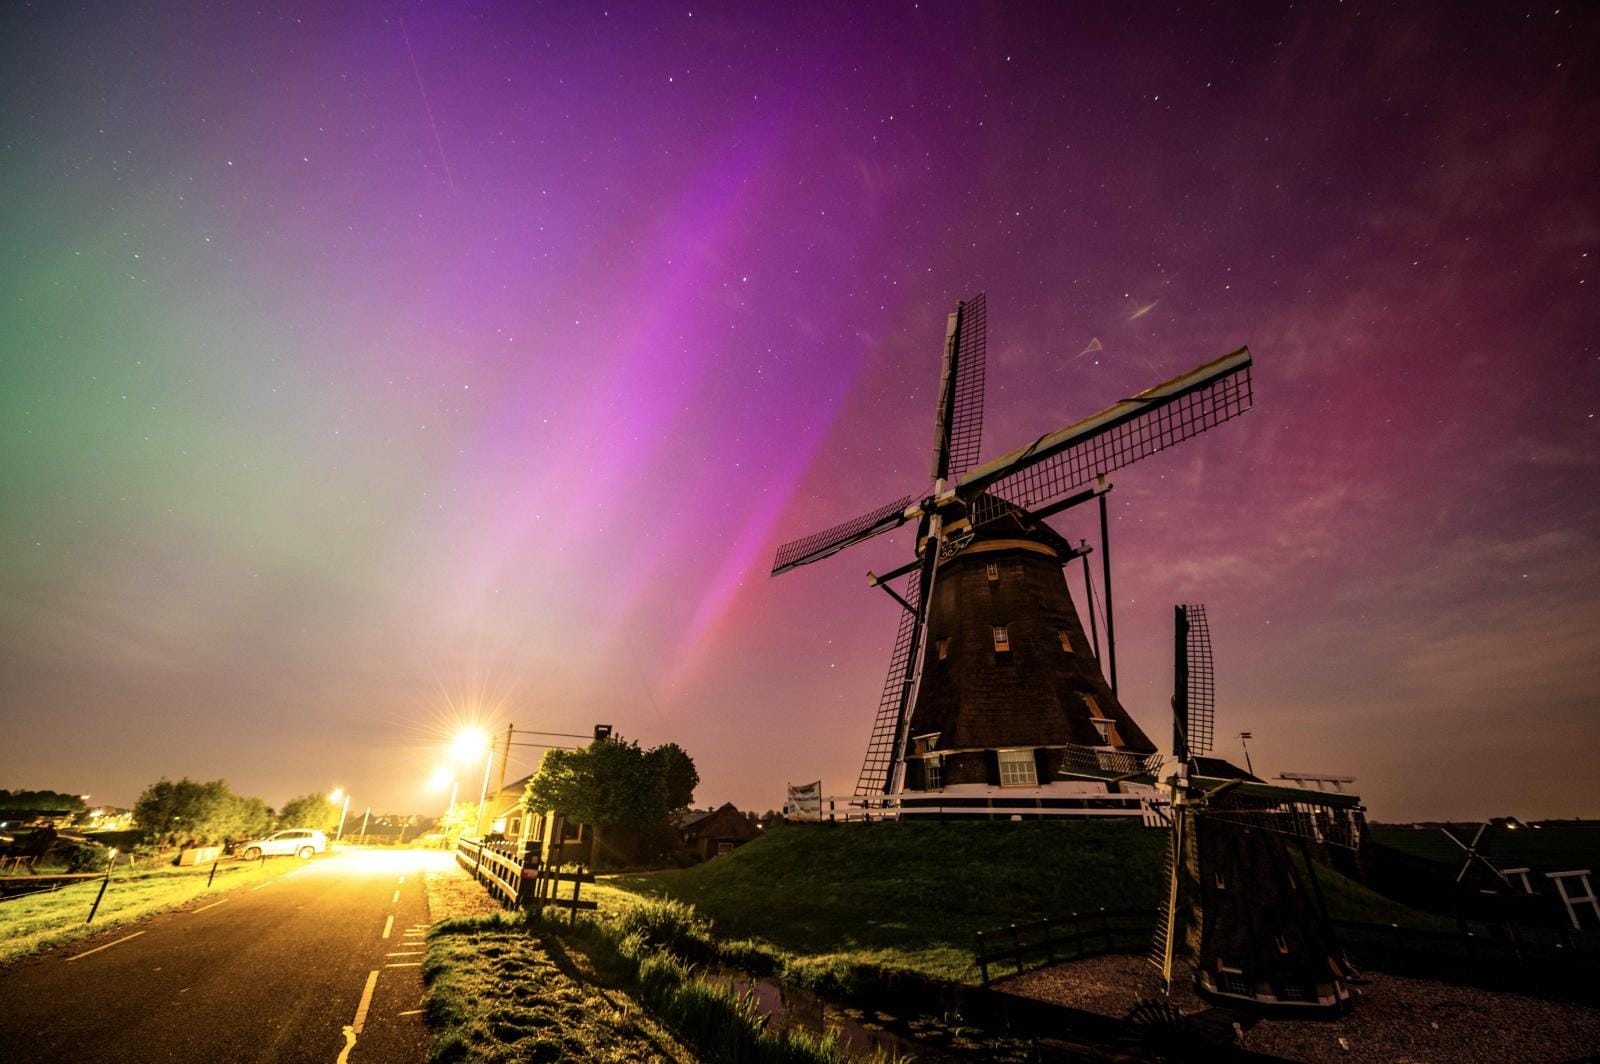 La aurora boreal en Aarlanderveen, Países Bajos